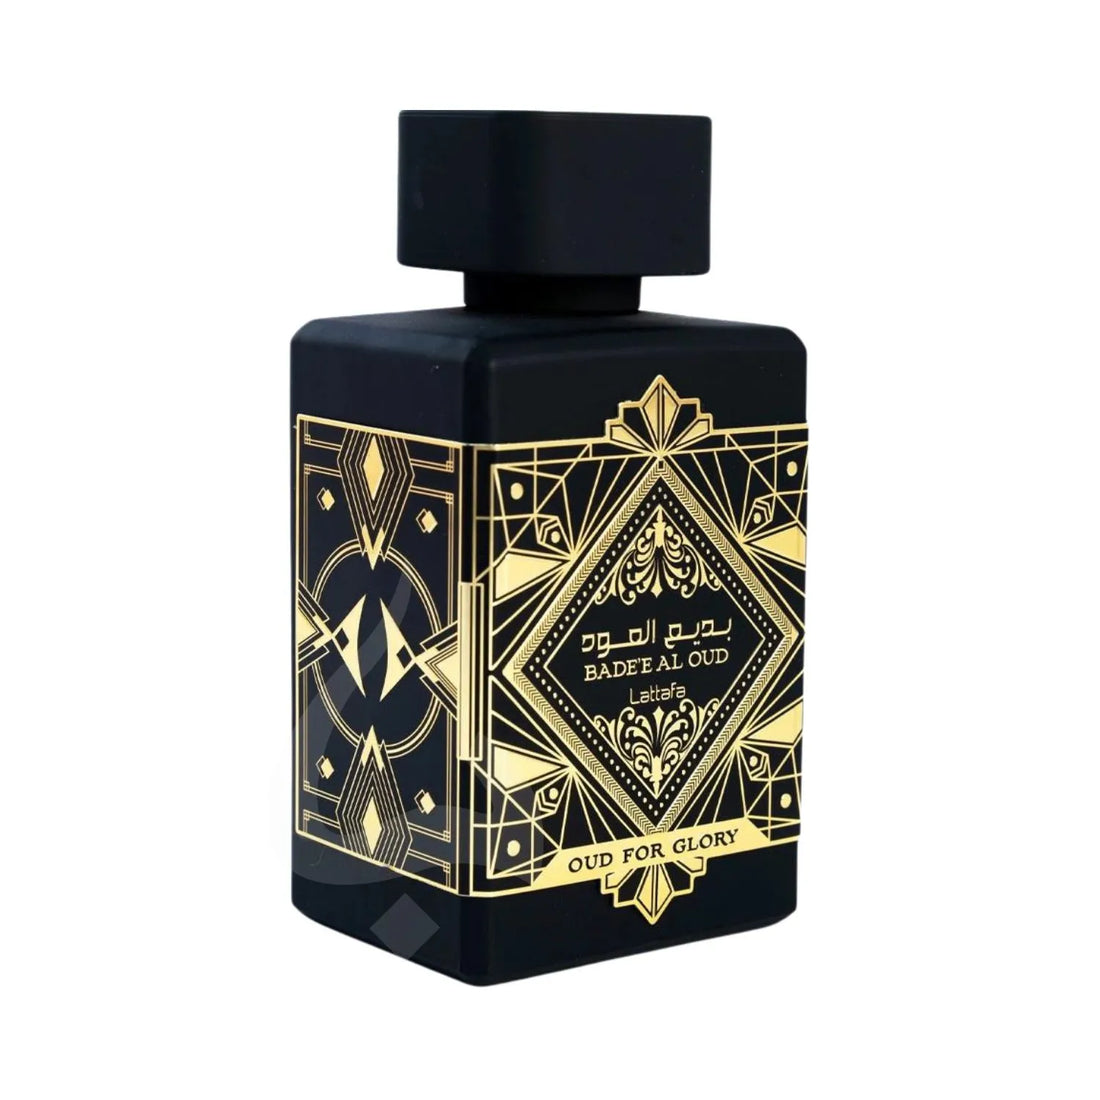 Badee Al Oud Glory Perfume Bottle